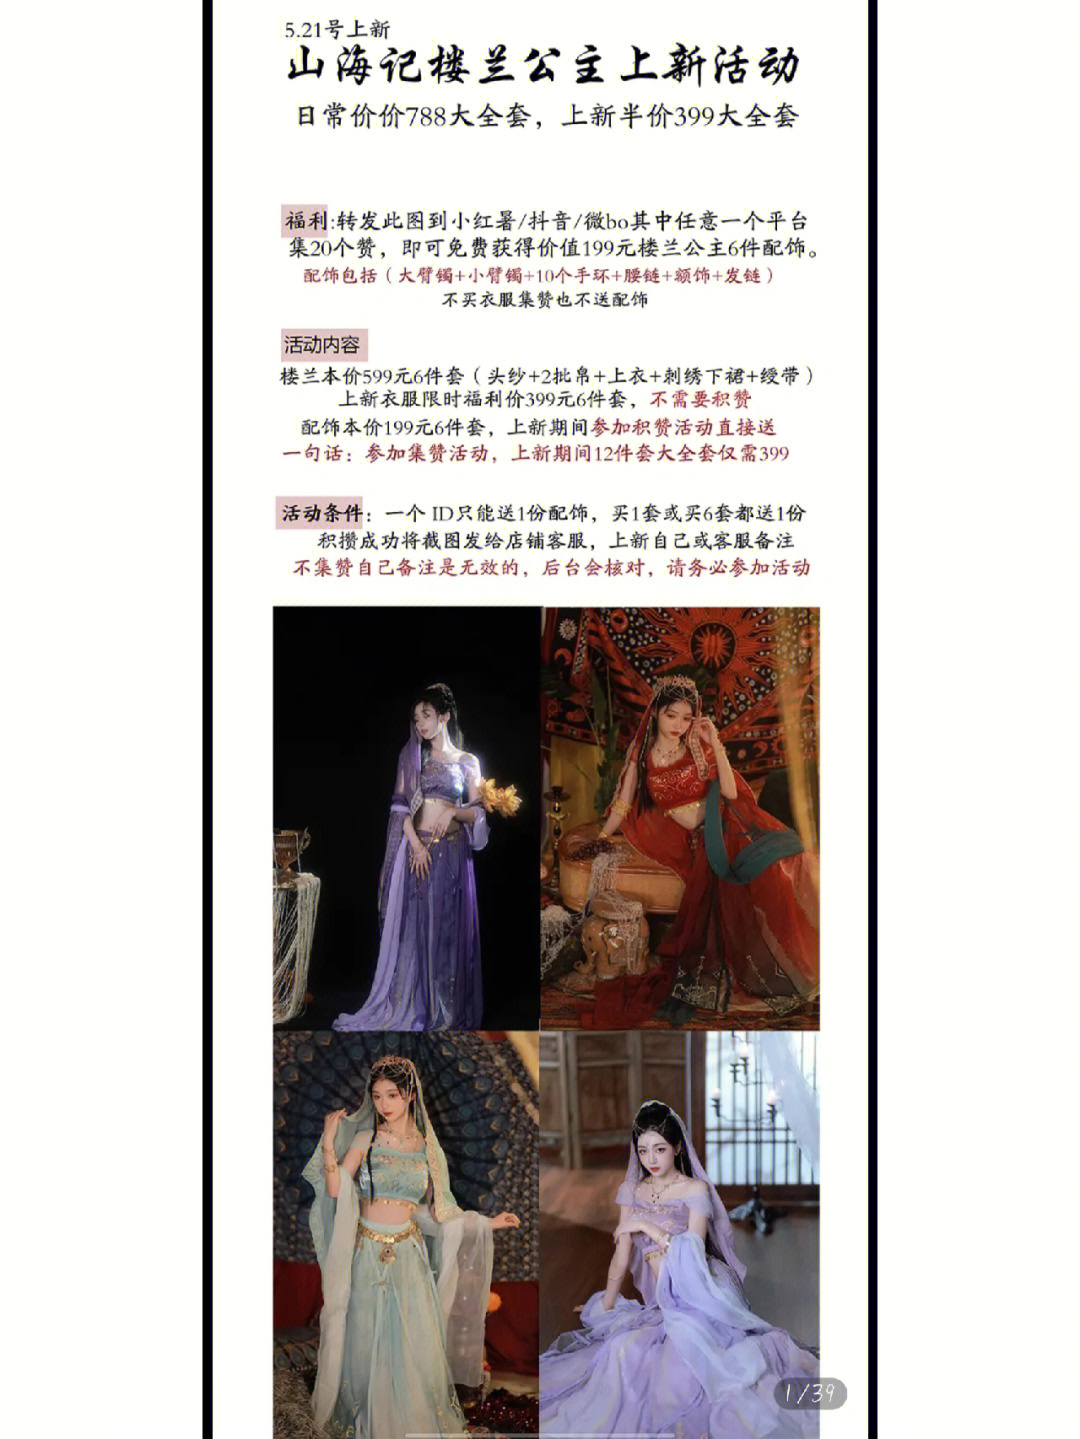 楼兰公主日本复原图片图片